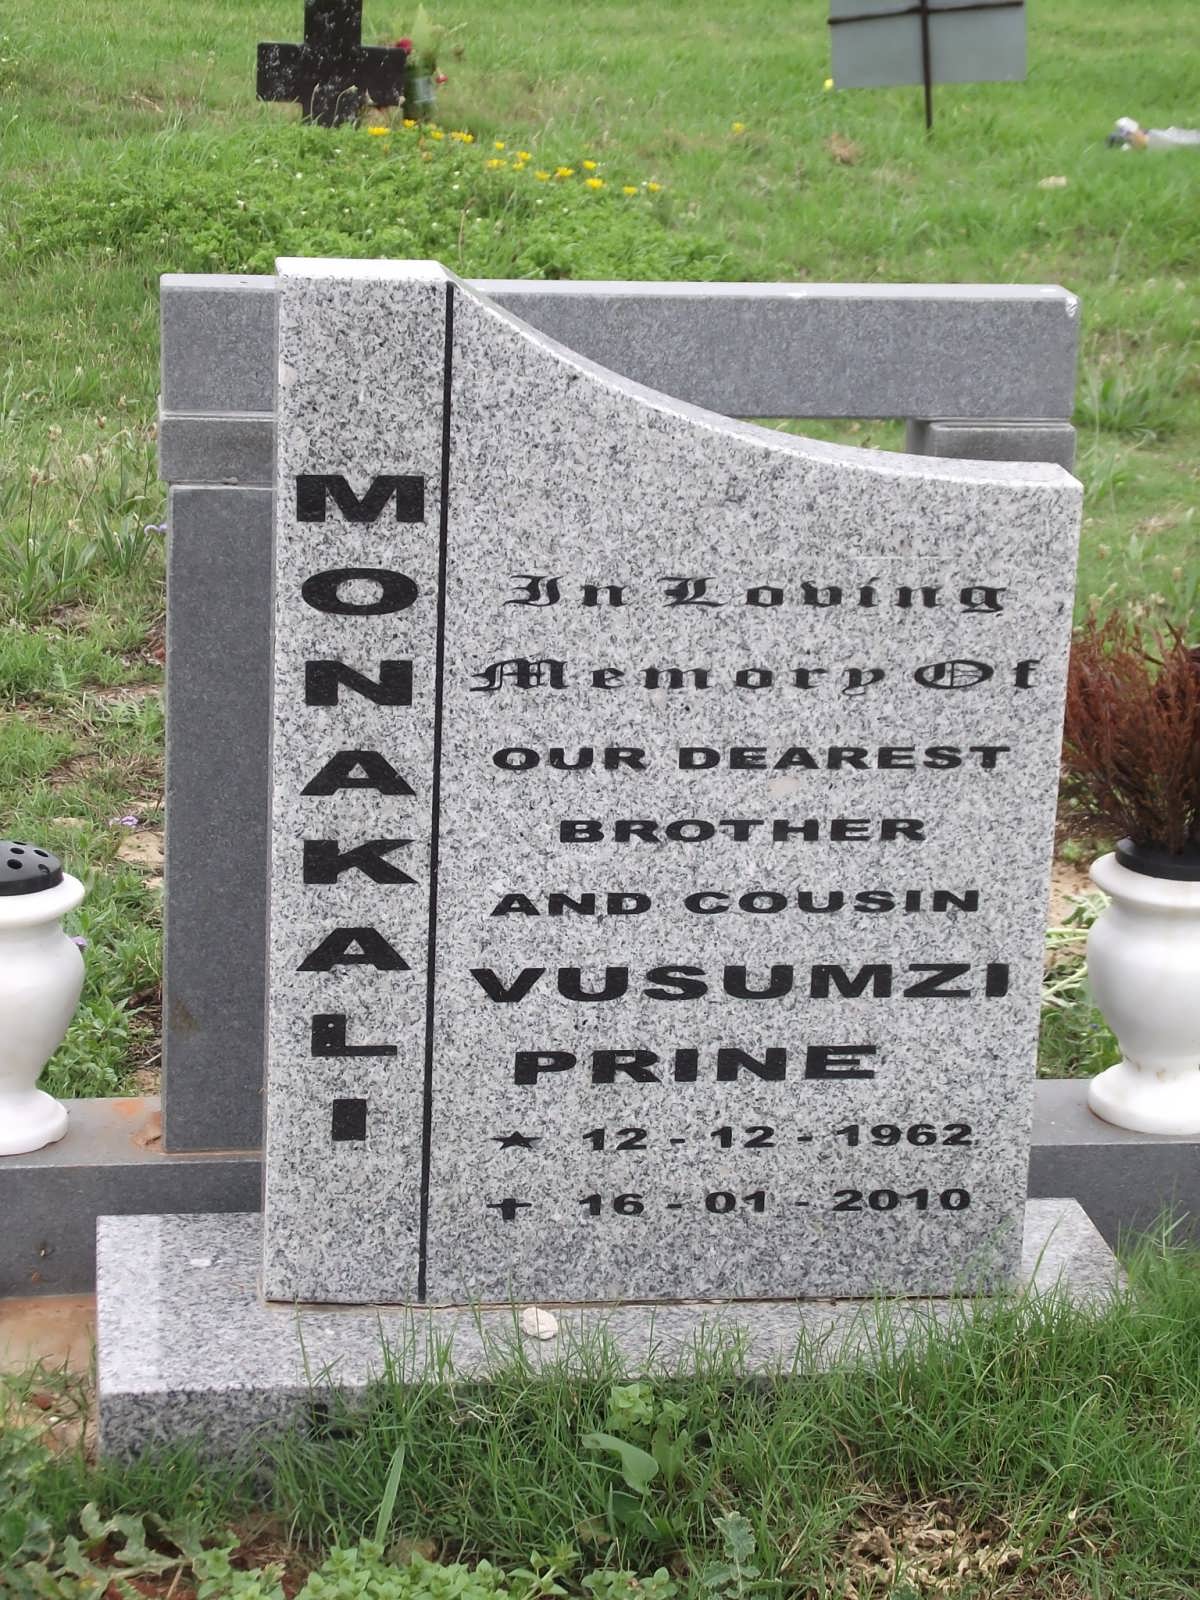 MONAKALI Vusumzi Prine 1962-2010